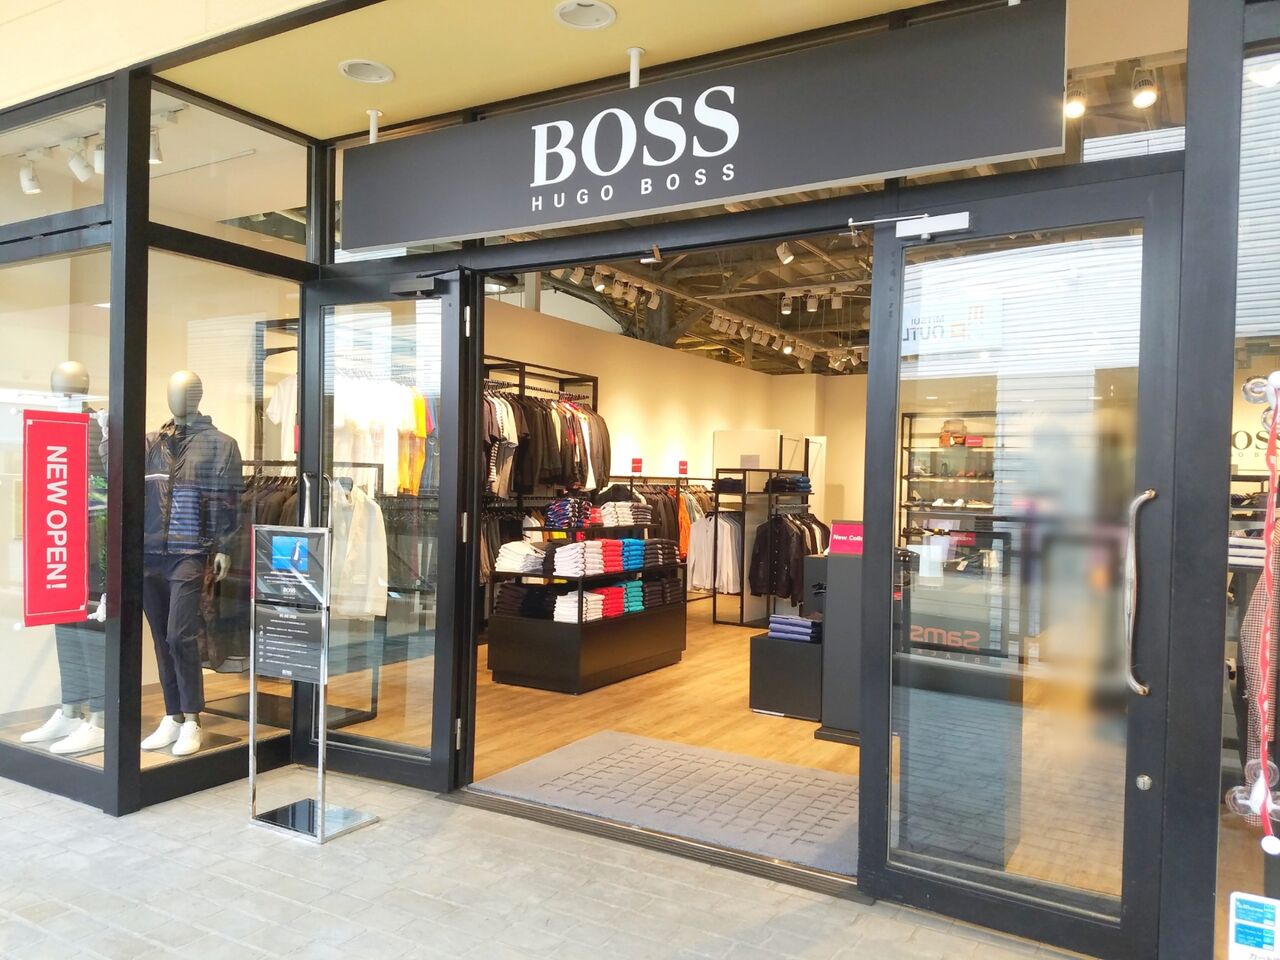 美浜区ひび野 アウトレットパーク幕張 にファッションブランド Boss ボス がオープンしたらしい ちば通信 千葉県千葉市の地域情報サイト